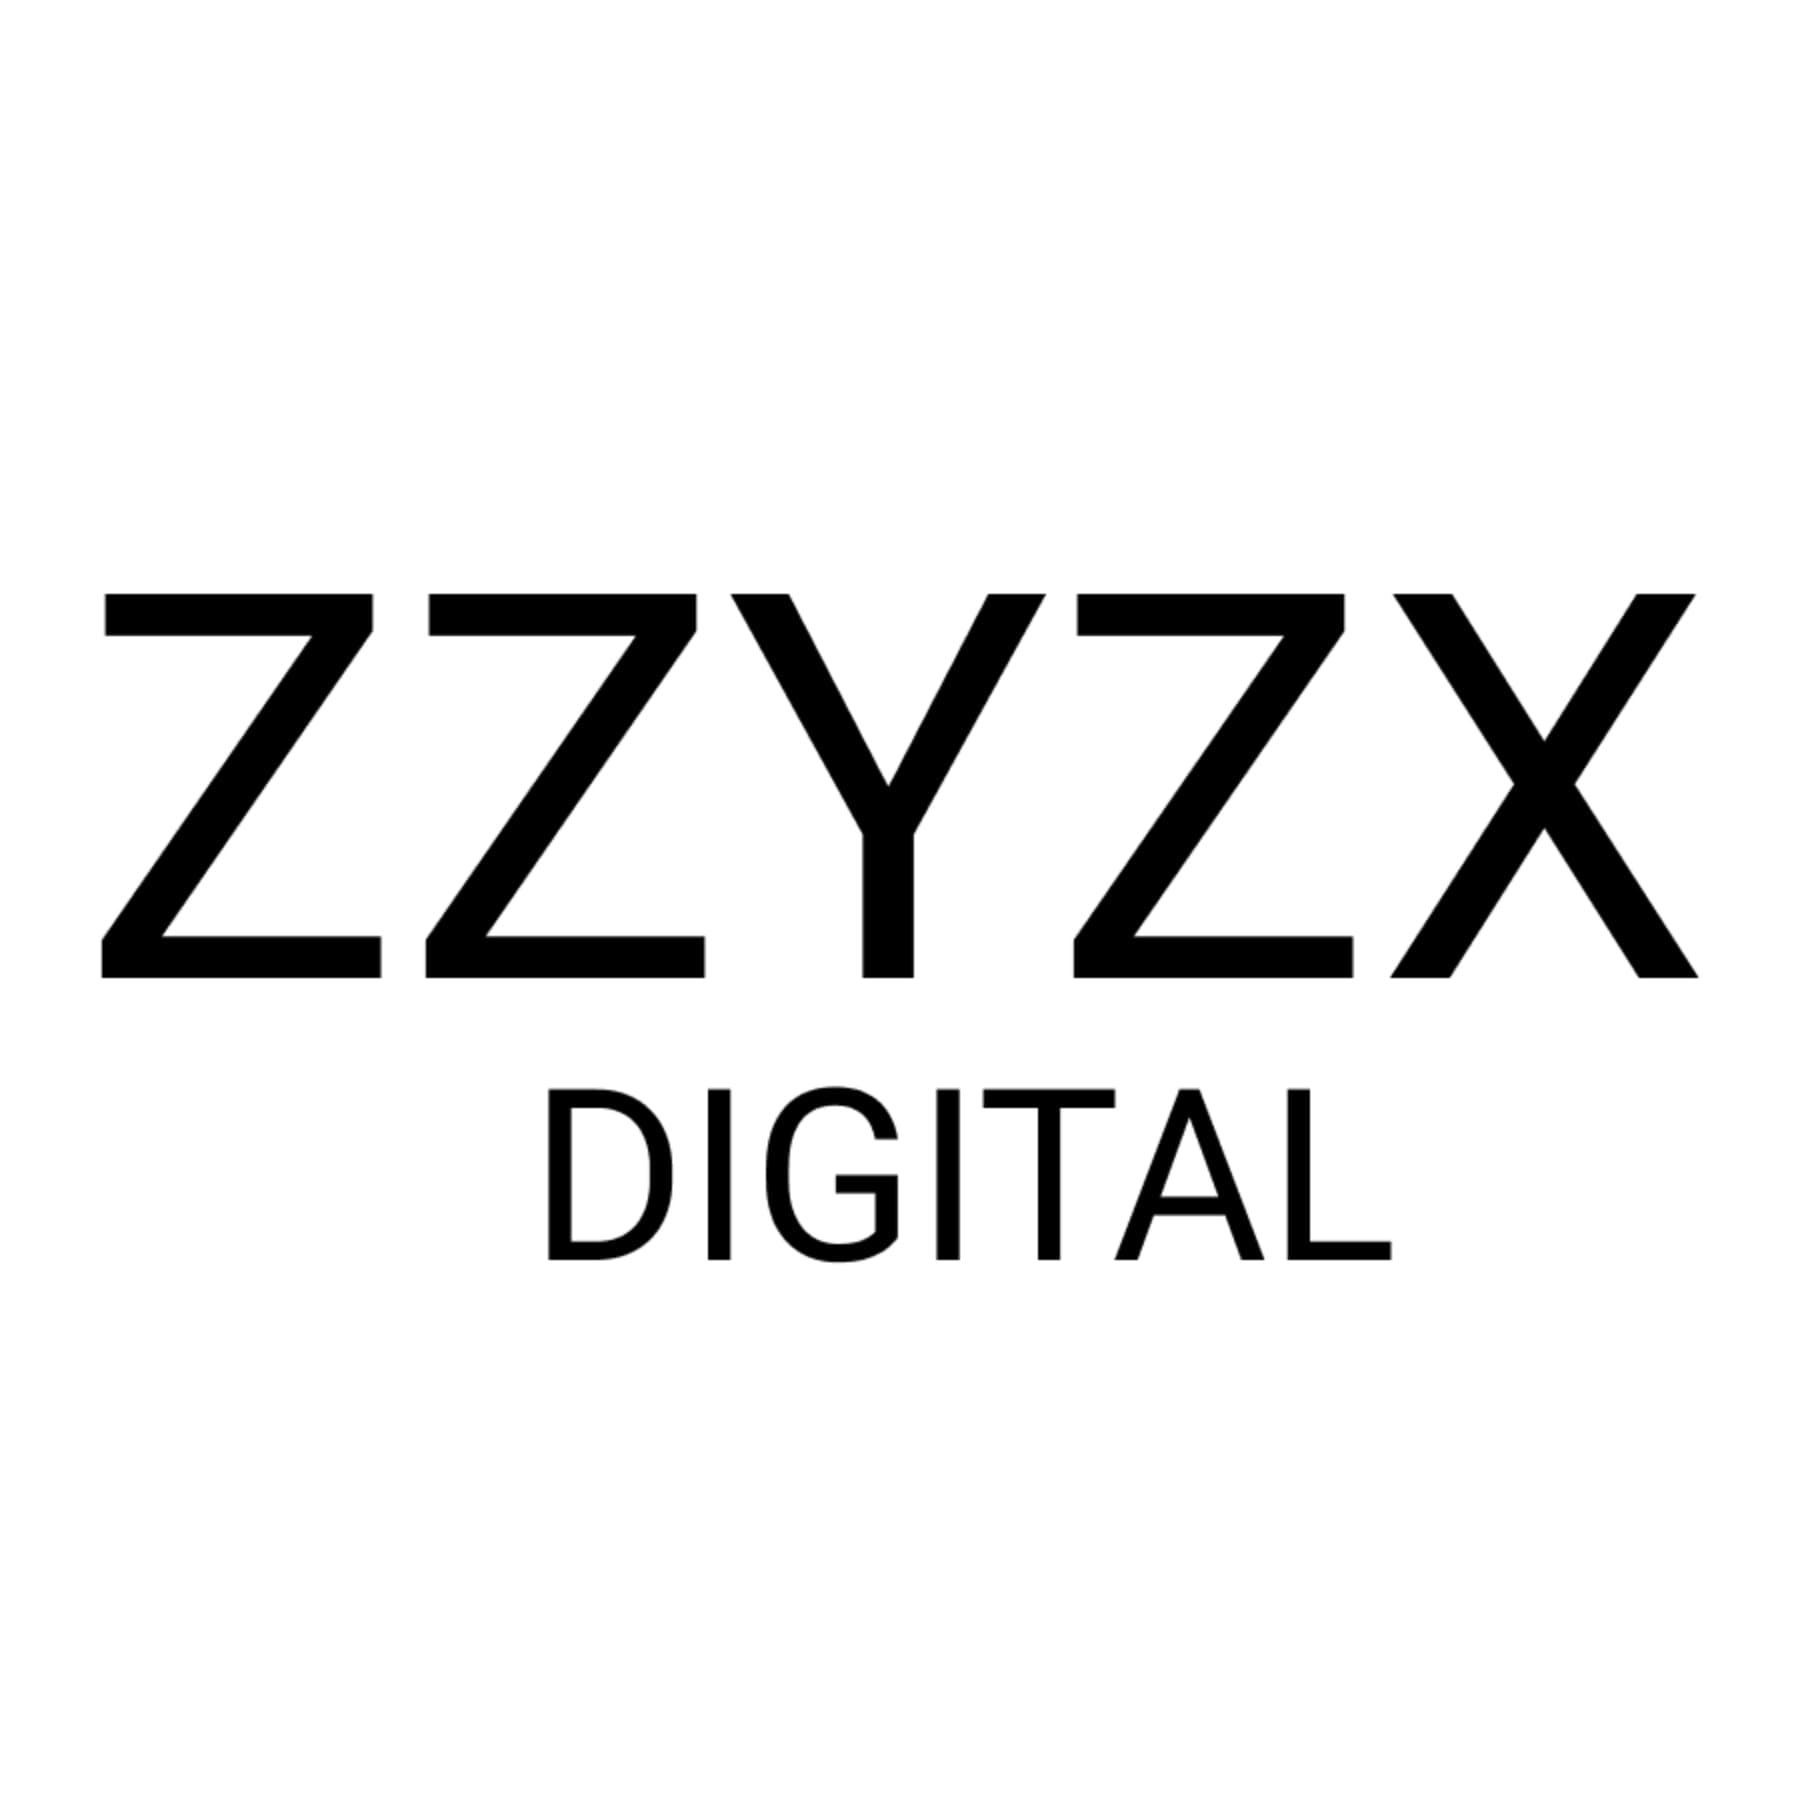 zzyzx digital's logo